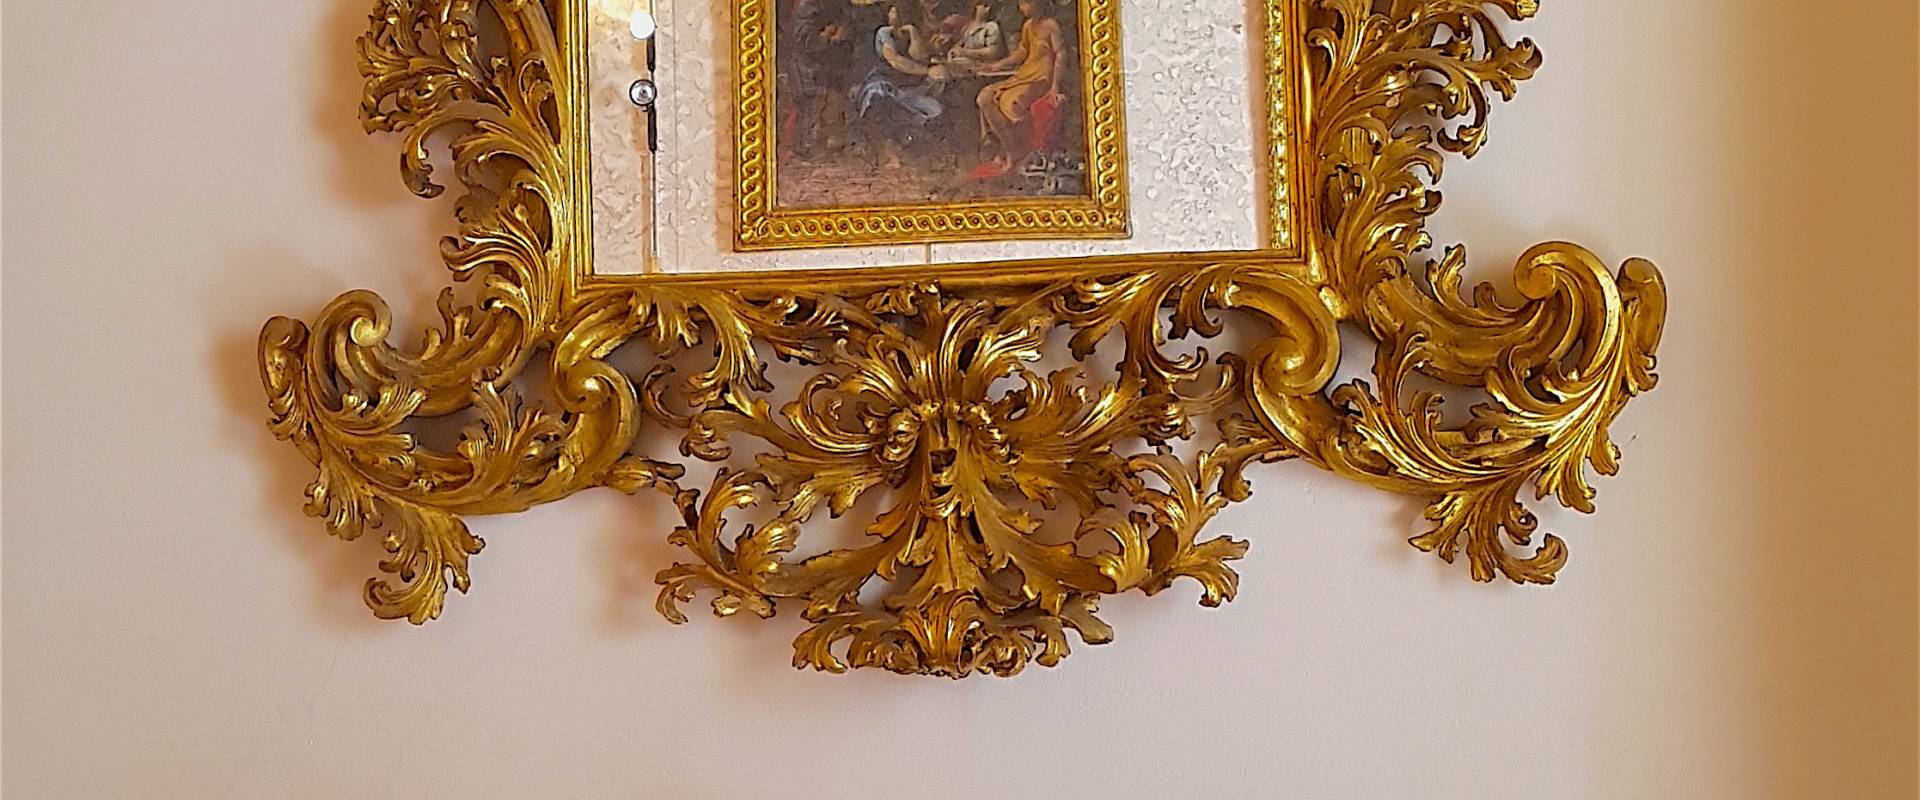 Palazzo Pepoli Campogrande - Sala dell'Olimpo nello specchio Abramo visitato dagli angeli ludovico carracci foto di Opi1010